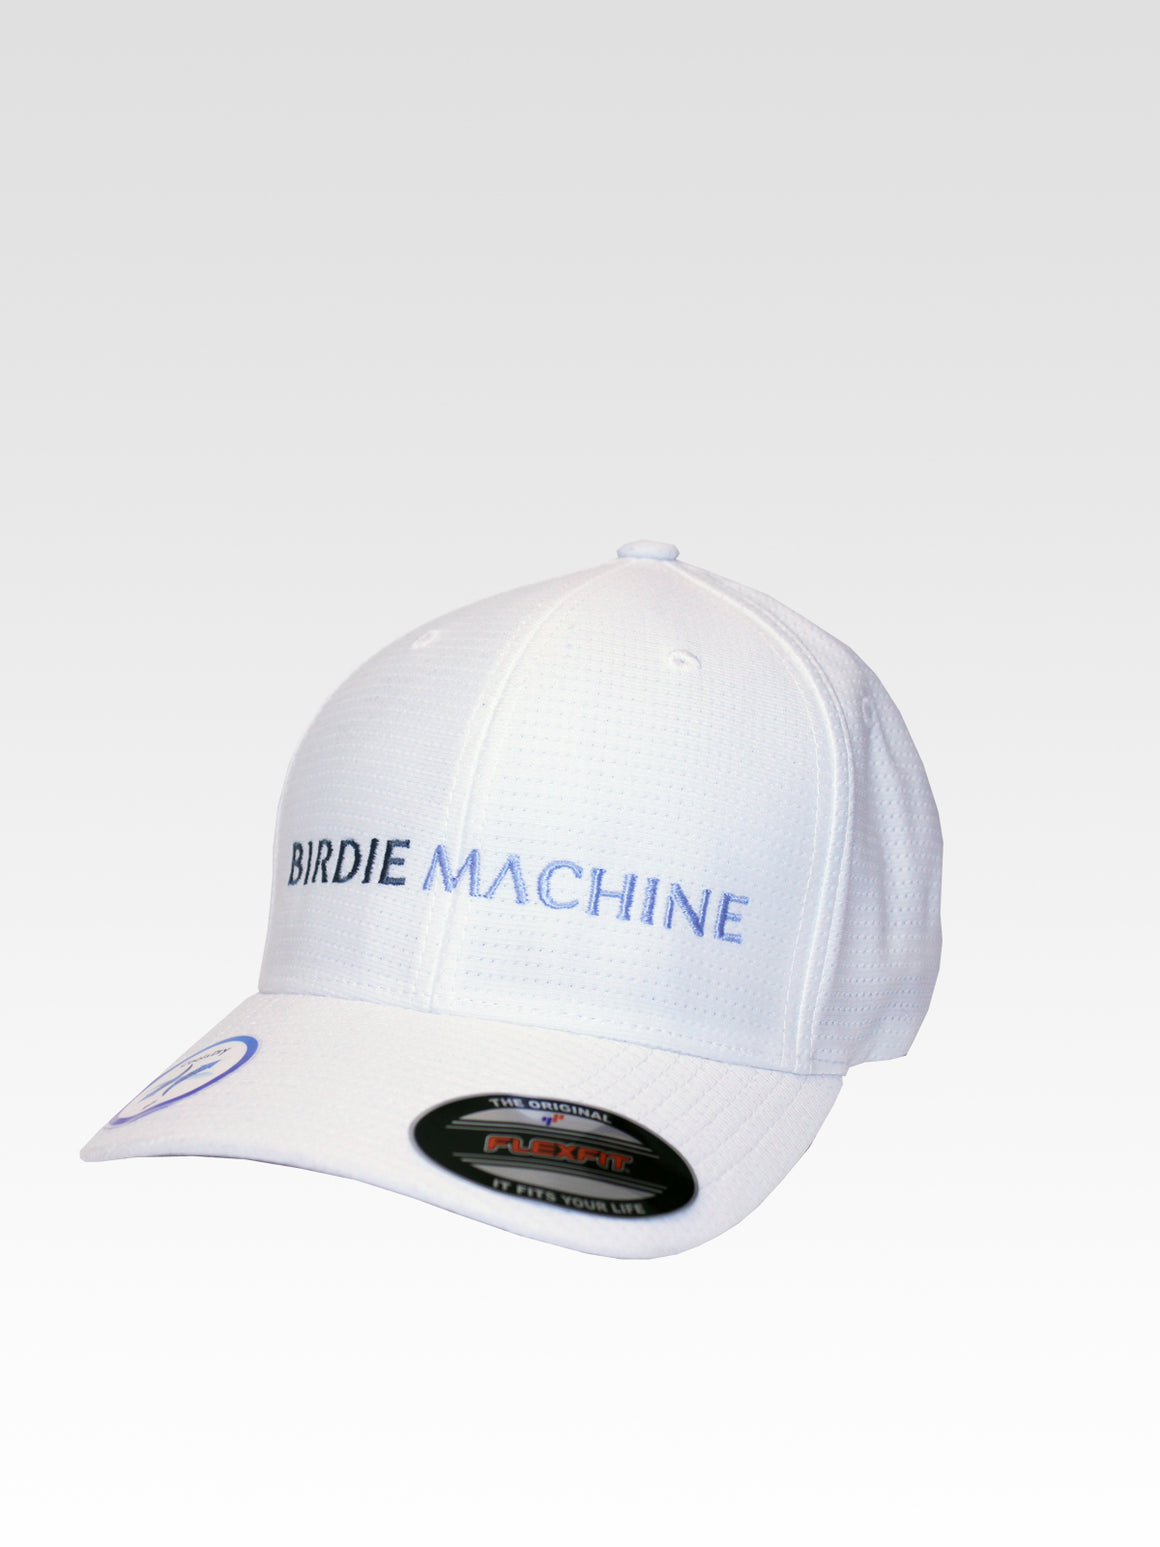 Birdie Machine Tricot - White (Brand Grey / Vista)